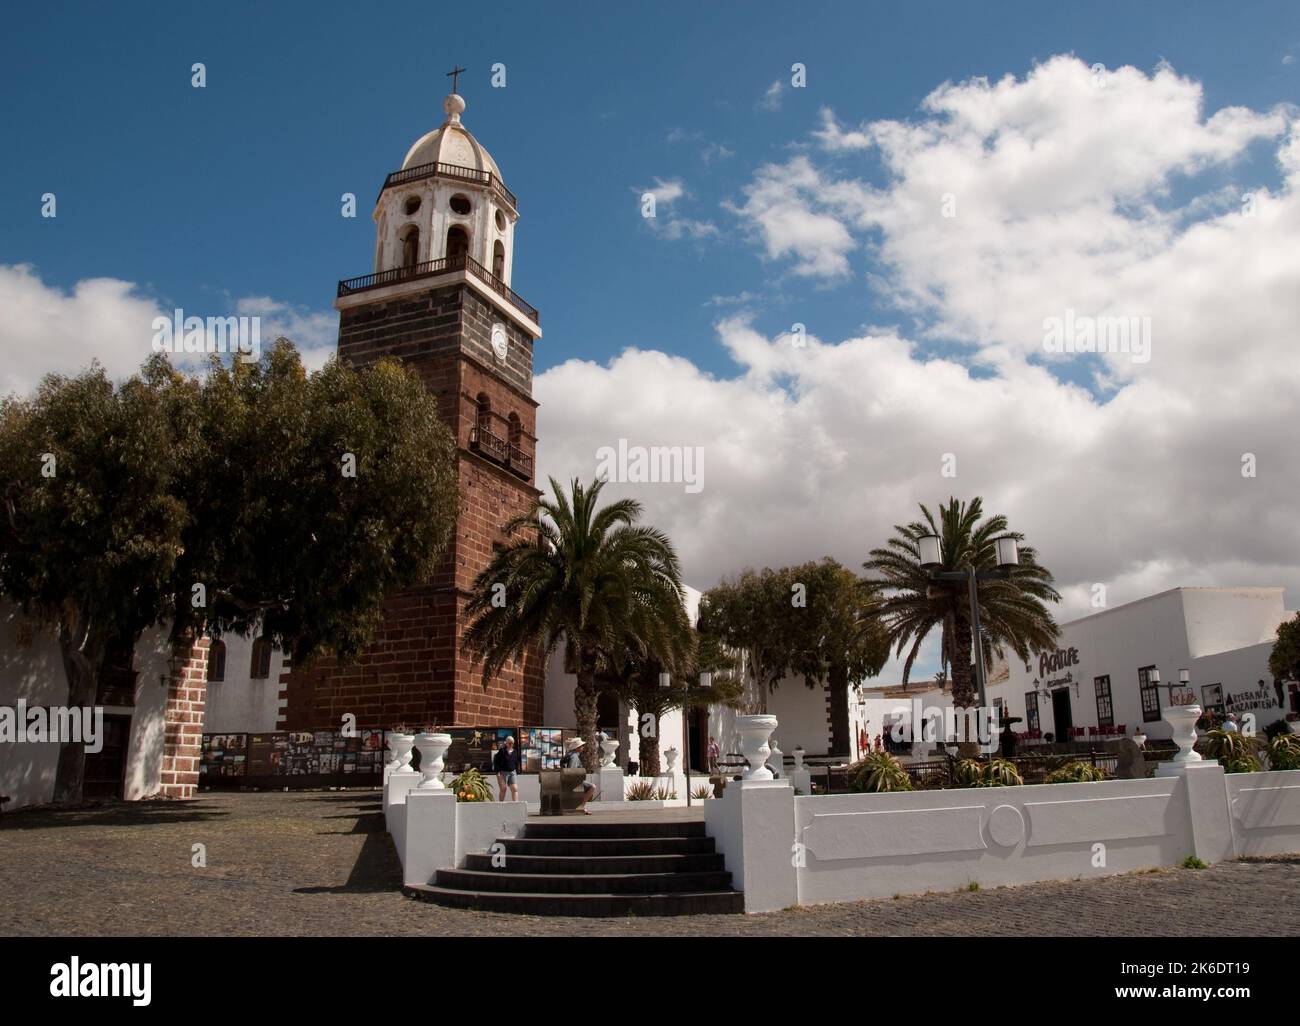 Campanile della Chiesa di nostra Signora di Guadalupa, Teguise, Lanzarote, Isole Canarie. Teguise fu la capitale di Lanzarote fino al 1852 ed è immersa Foto Stock